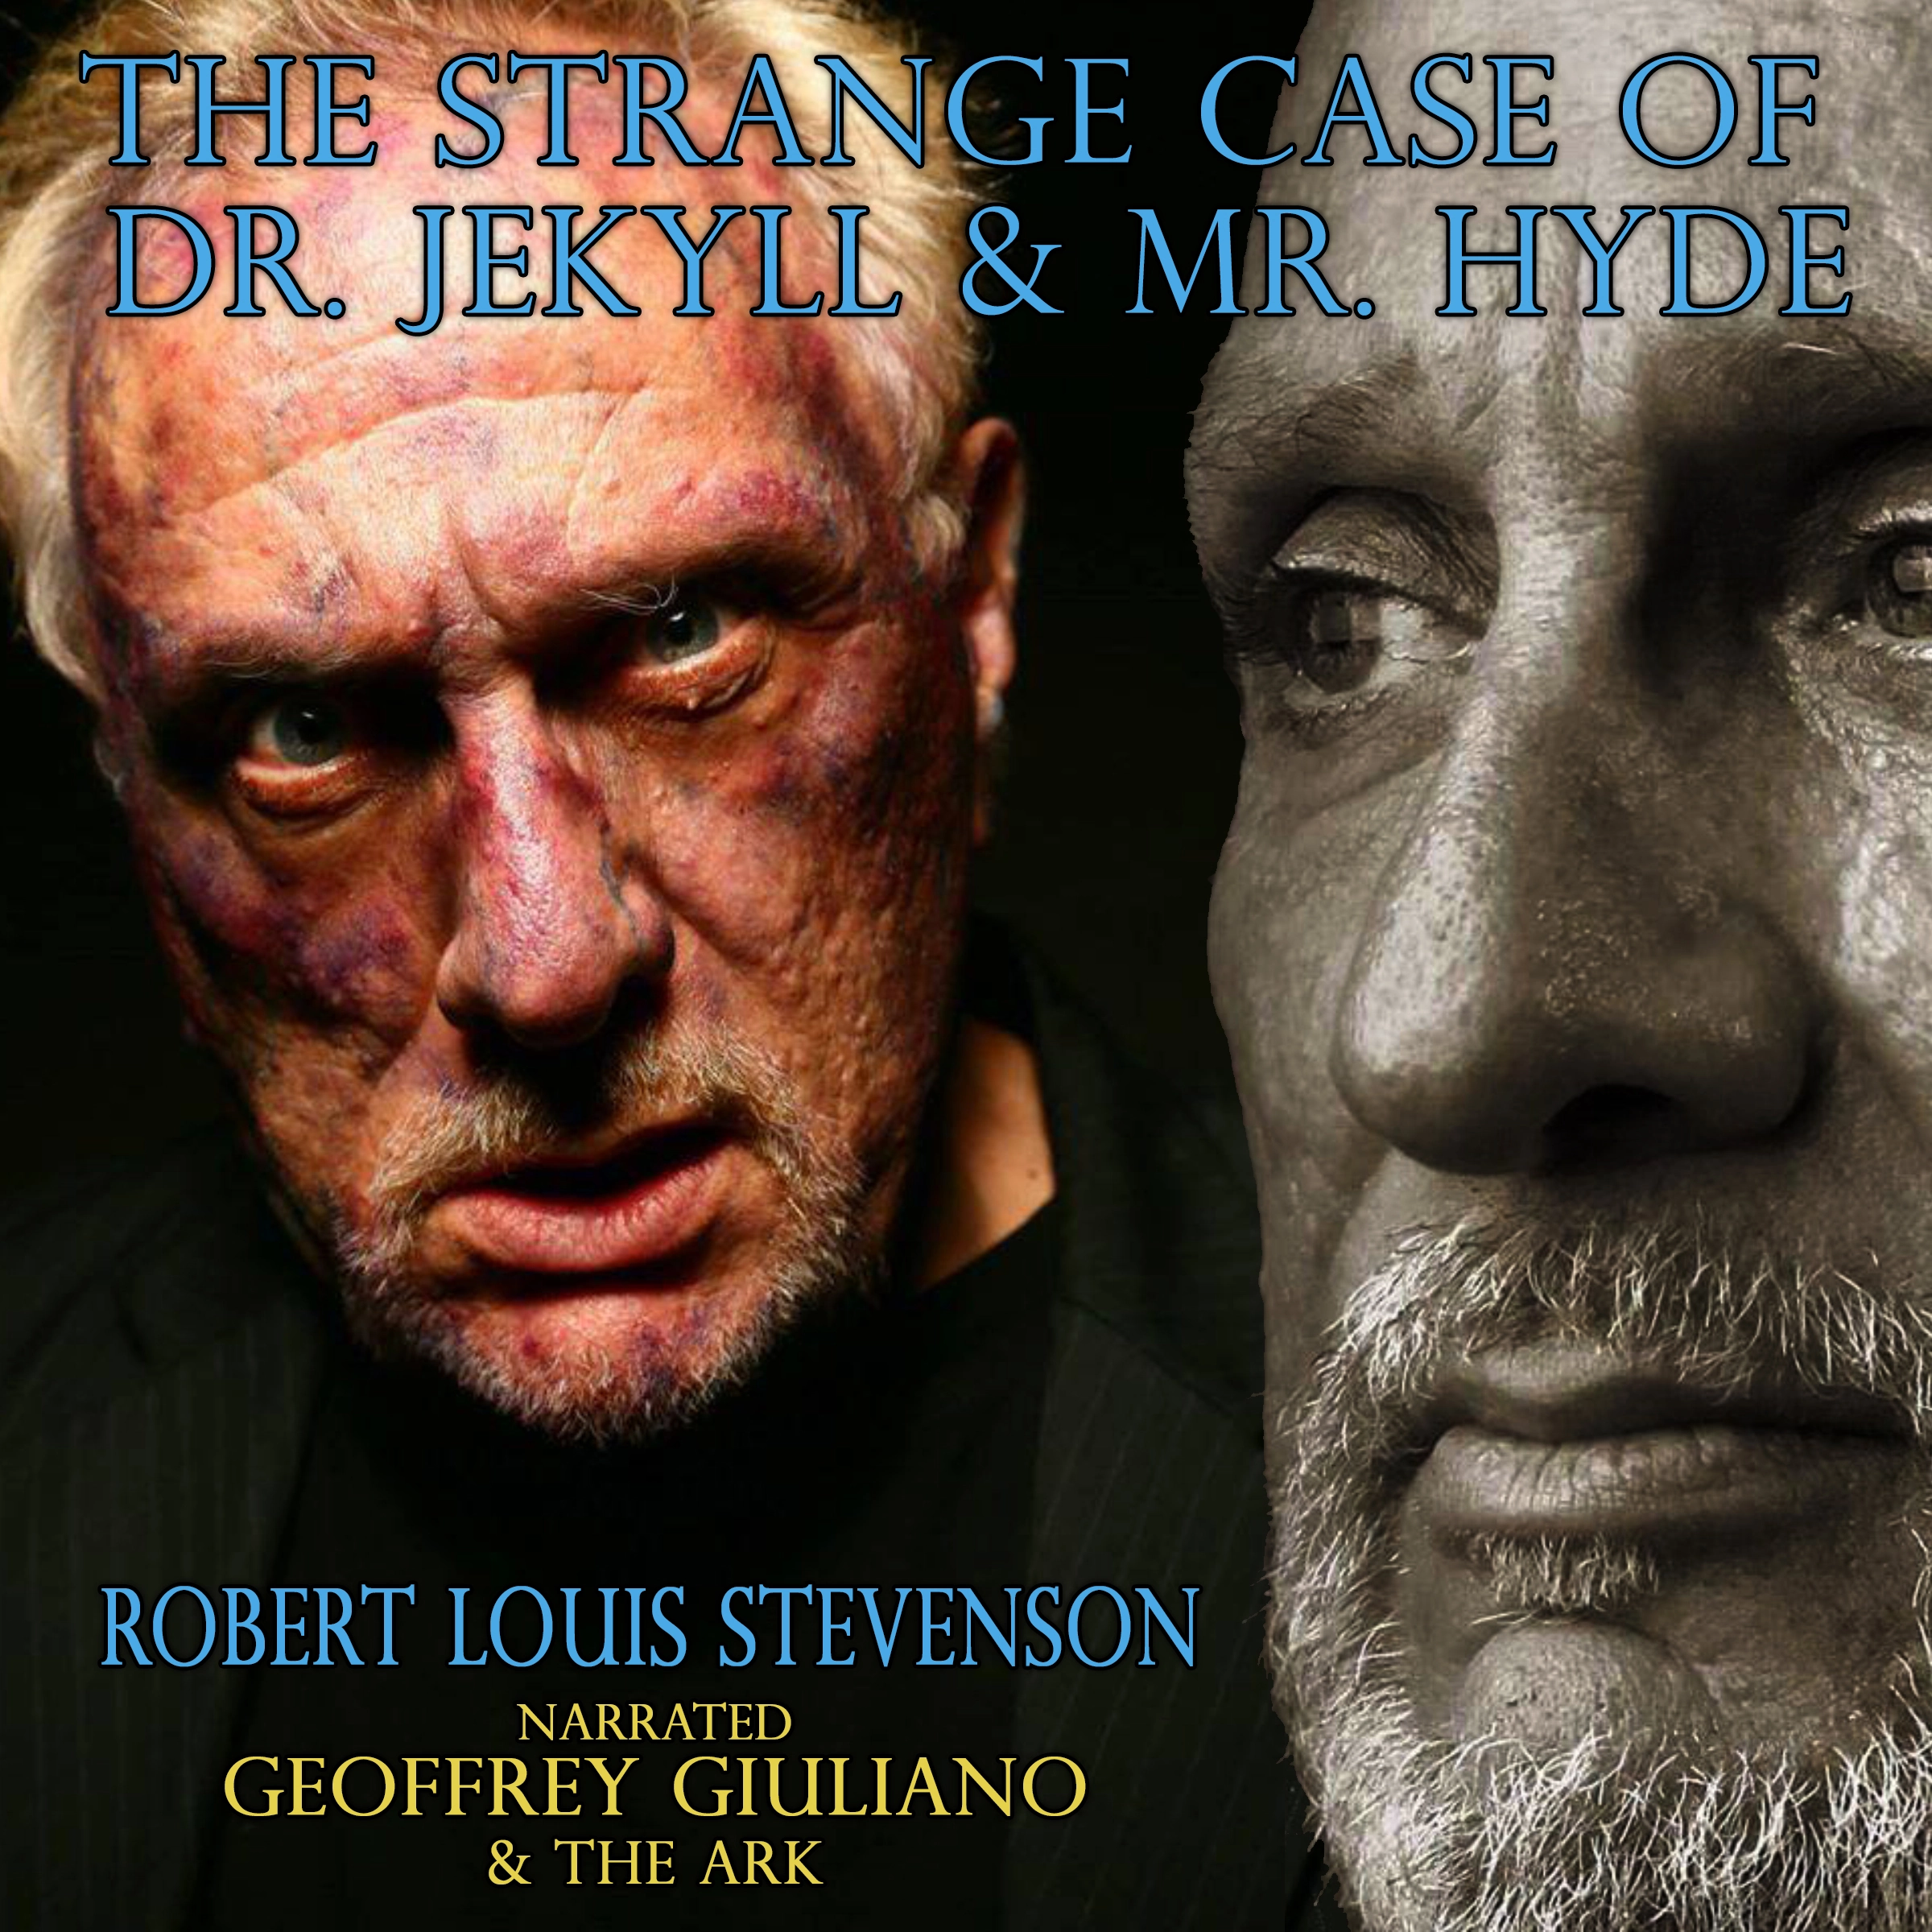 The Strange Case Of Dr Jekyll & Mr Hyde by Robert Louis Stevenson Audiobook